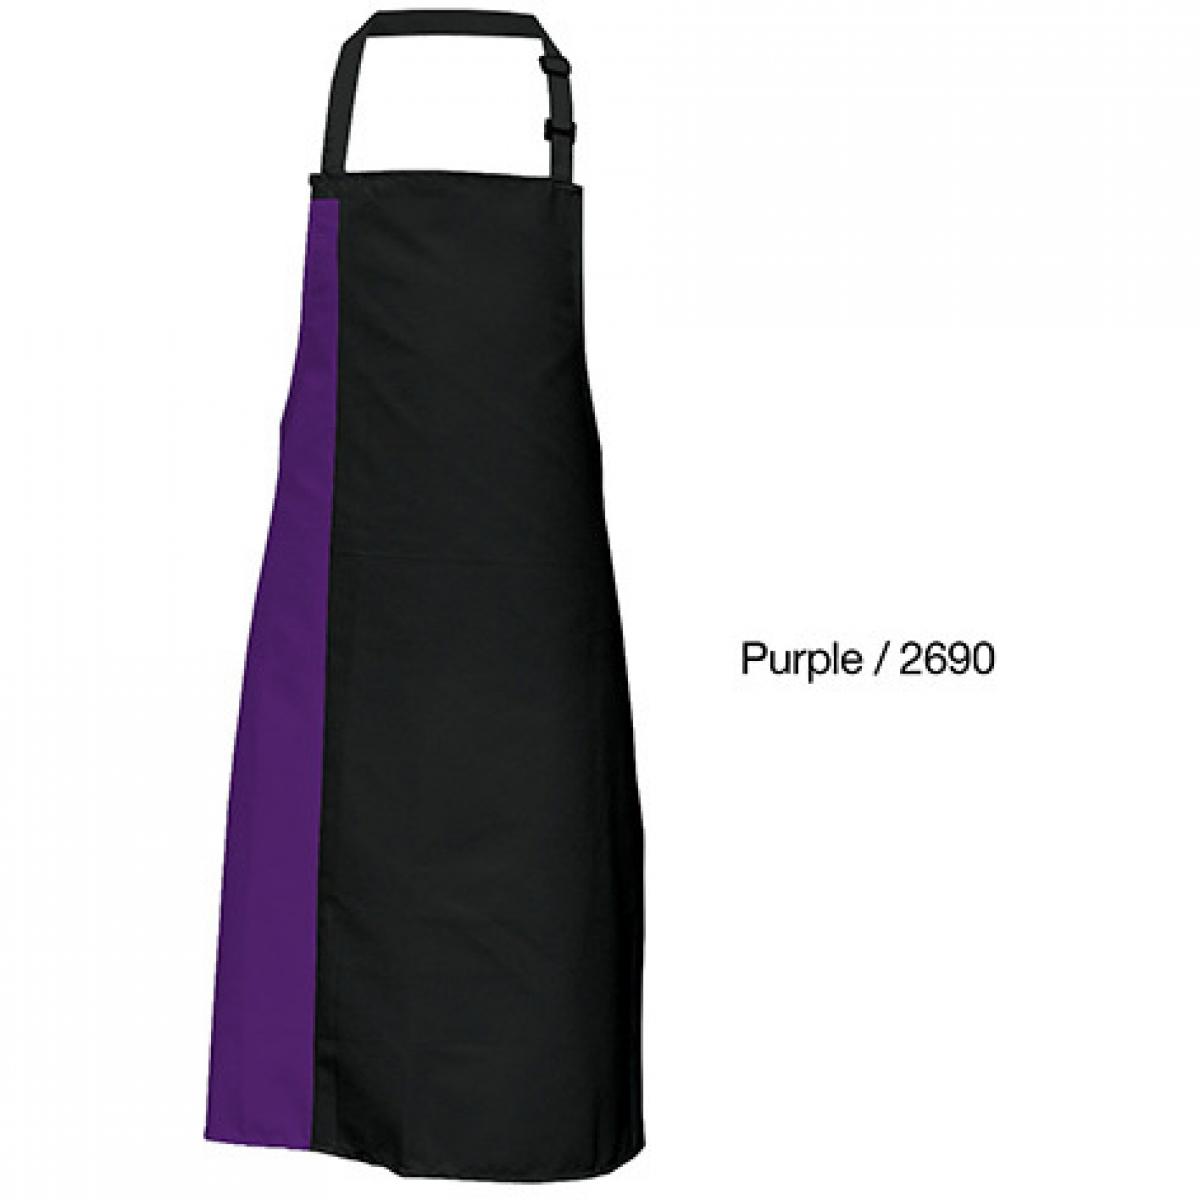 Hersteller: Link Kitchen Wear Herstellernummer: DS8572 Artikelbezeichnung: Duo Apron - 72 x 85 cm - Waschbar bis 60 °C Farbe: Black/Purple (ca. Pantone 269)